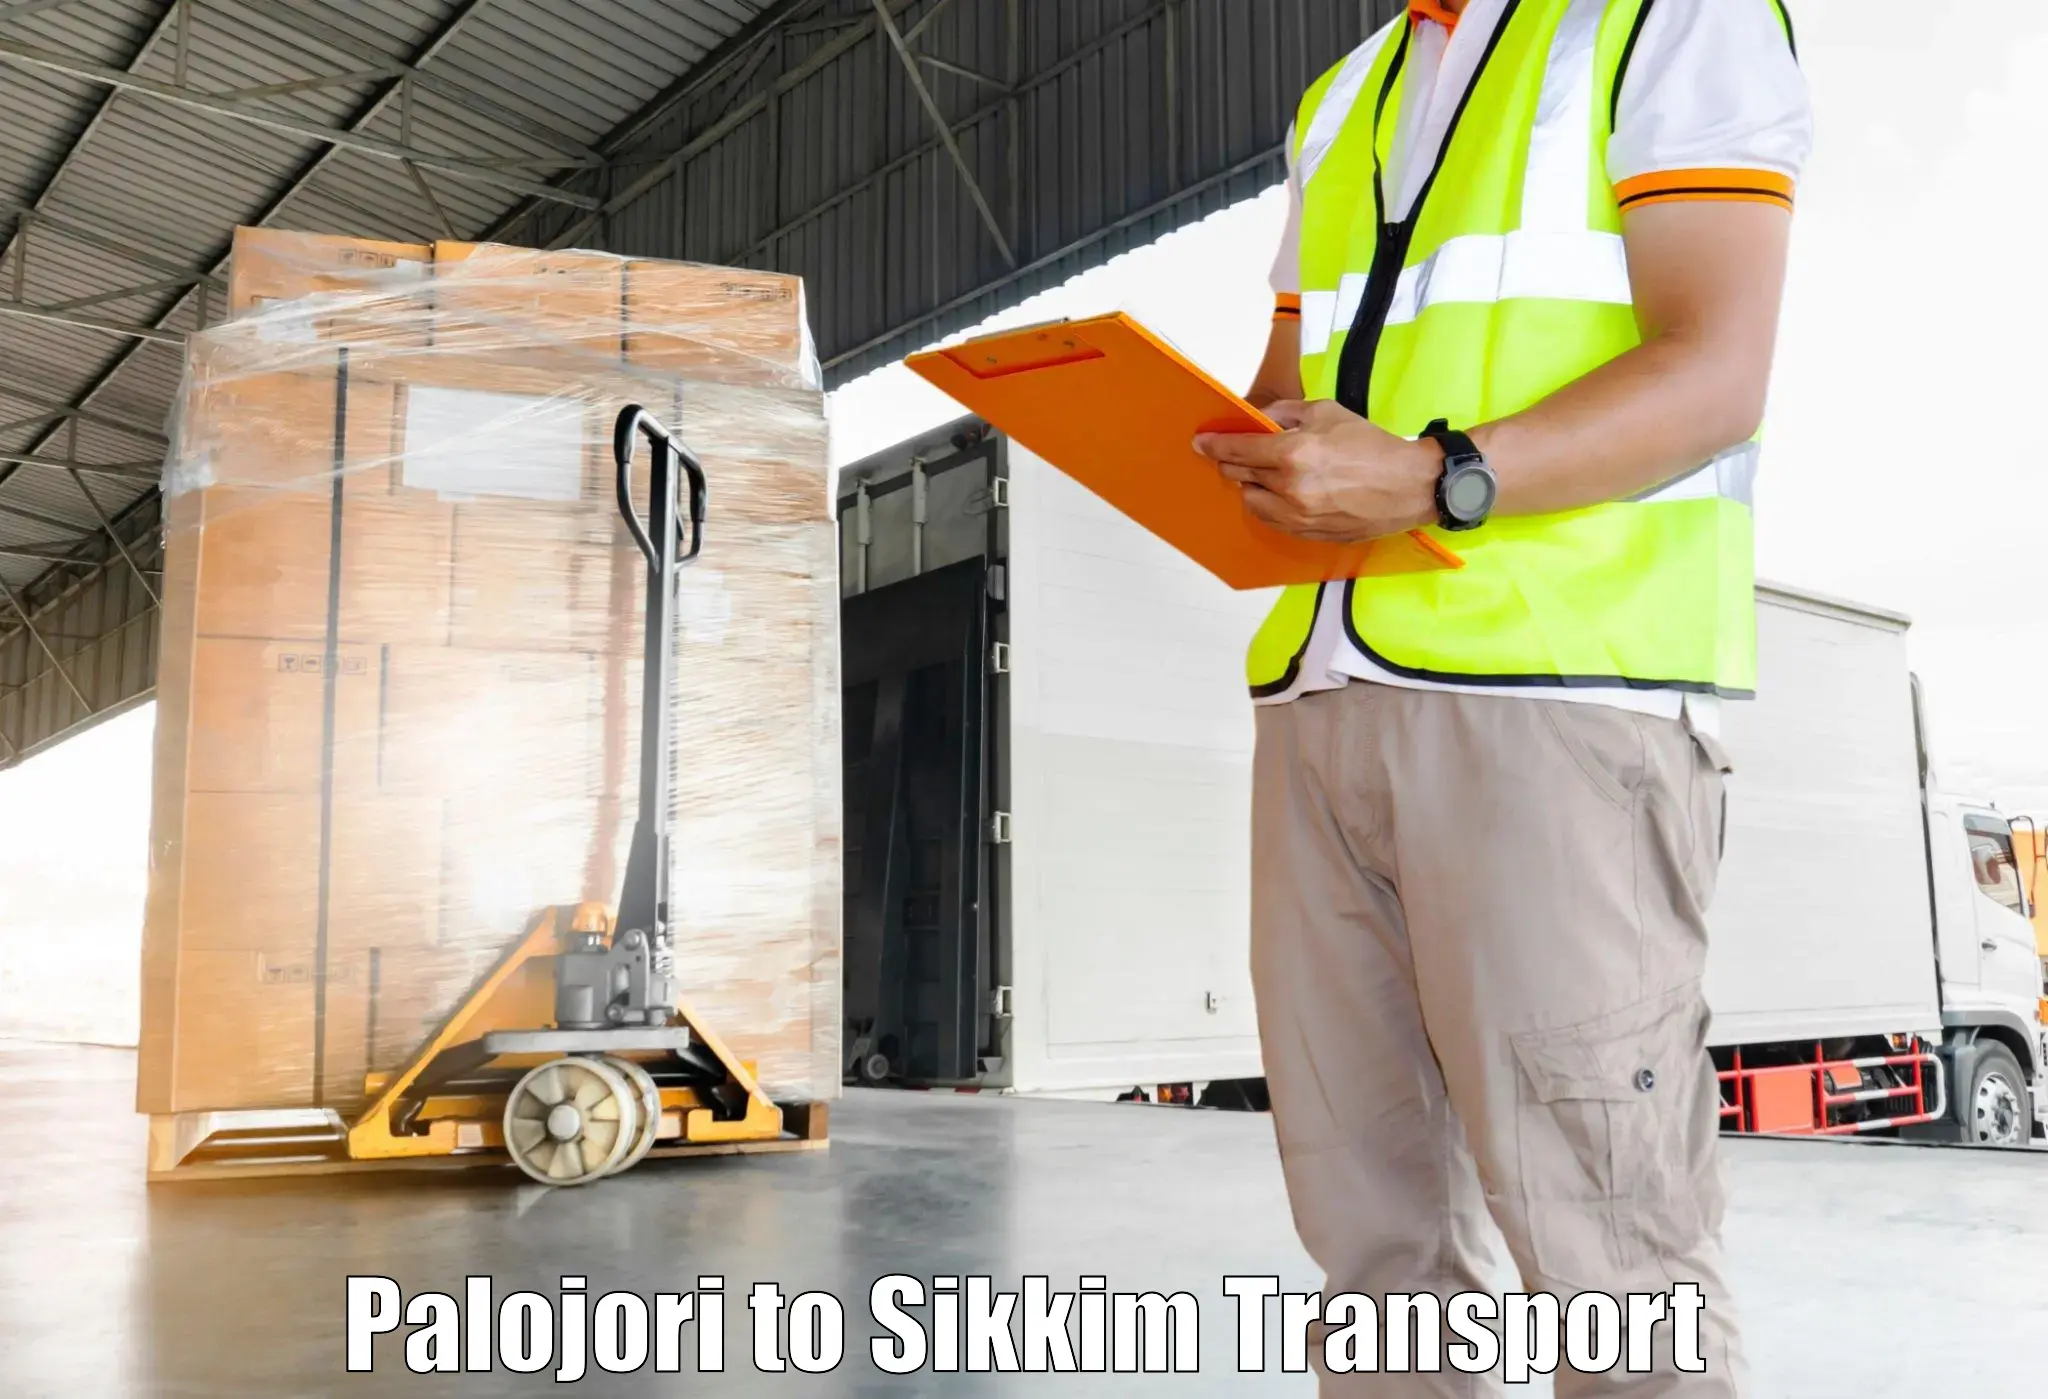 Transport in sharing Palojori to Pelling